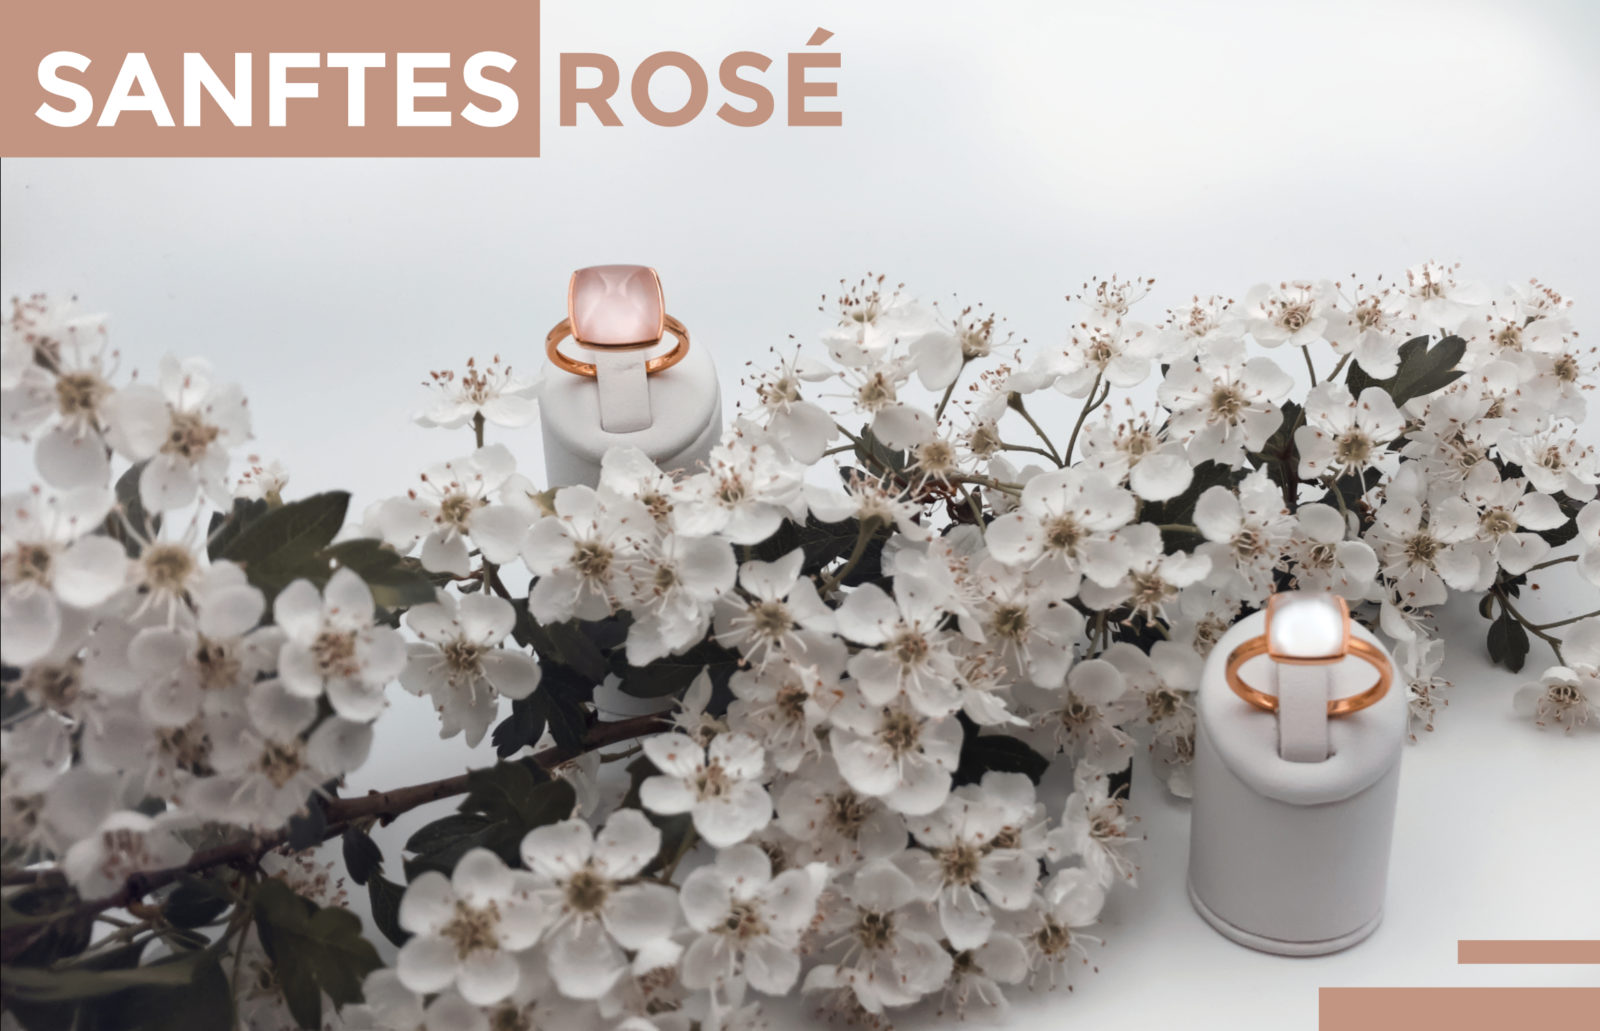 Neuigkeiten: "Sanftes Rose" - Zwei Ringe aus Rosegold mit Farbsteinen an Apfelbaumblüten dekoriert